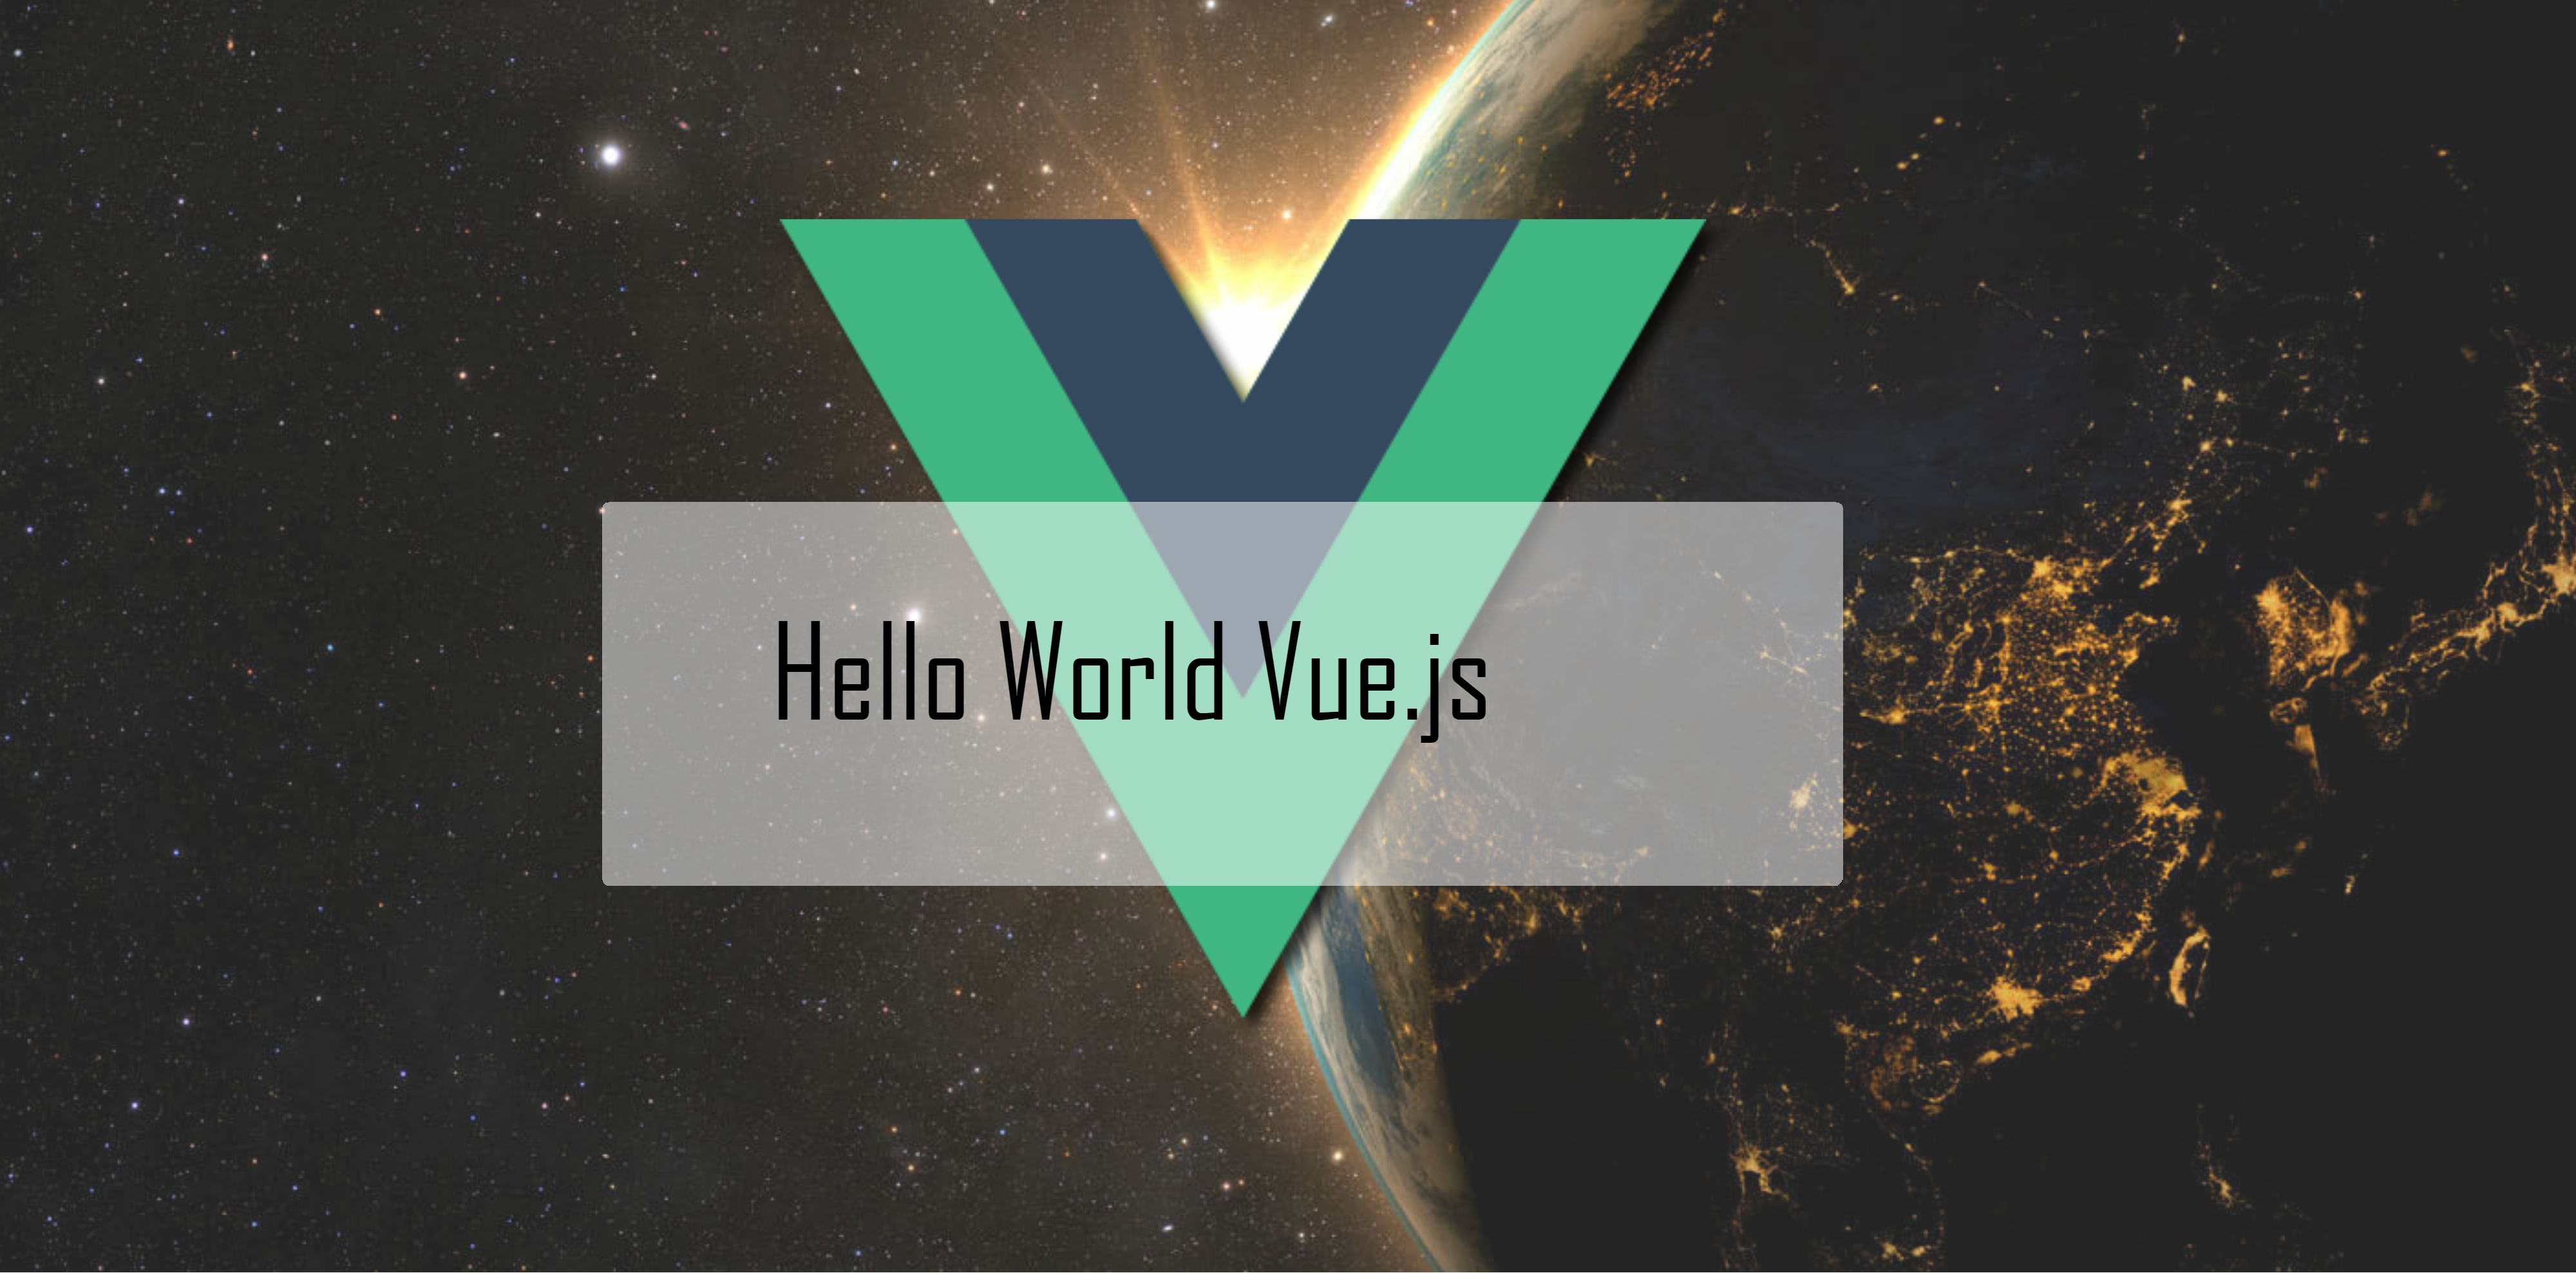 Hello World Vue.js